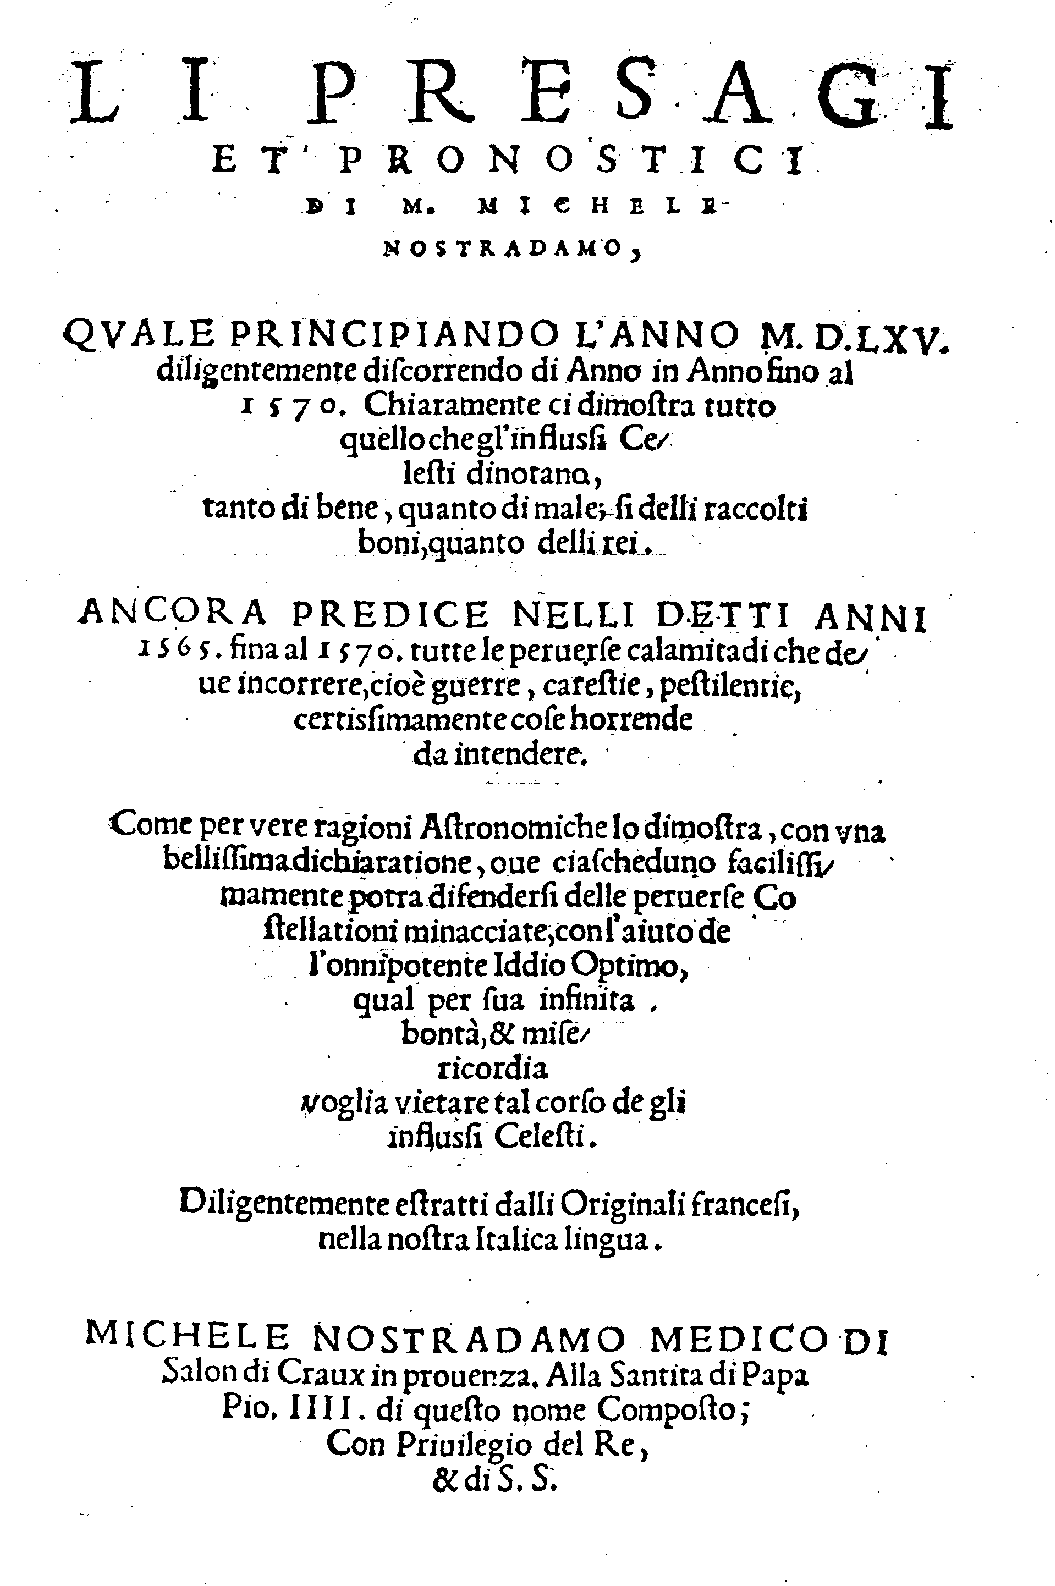 Li Presagi 1565